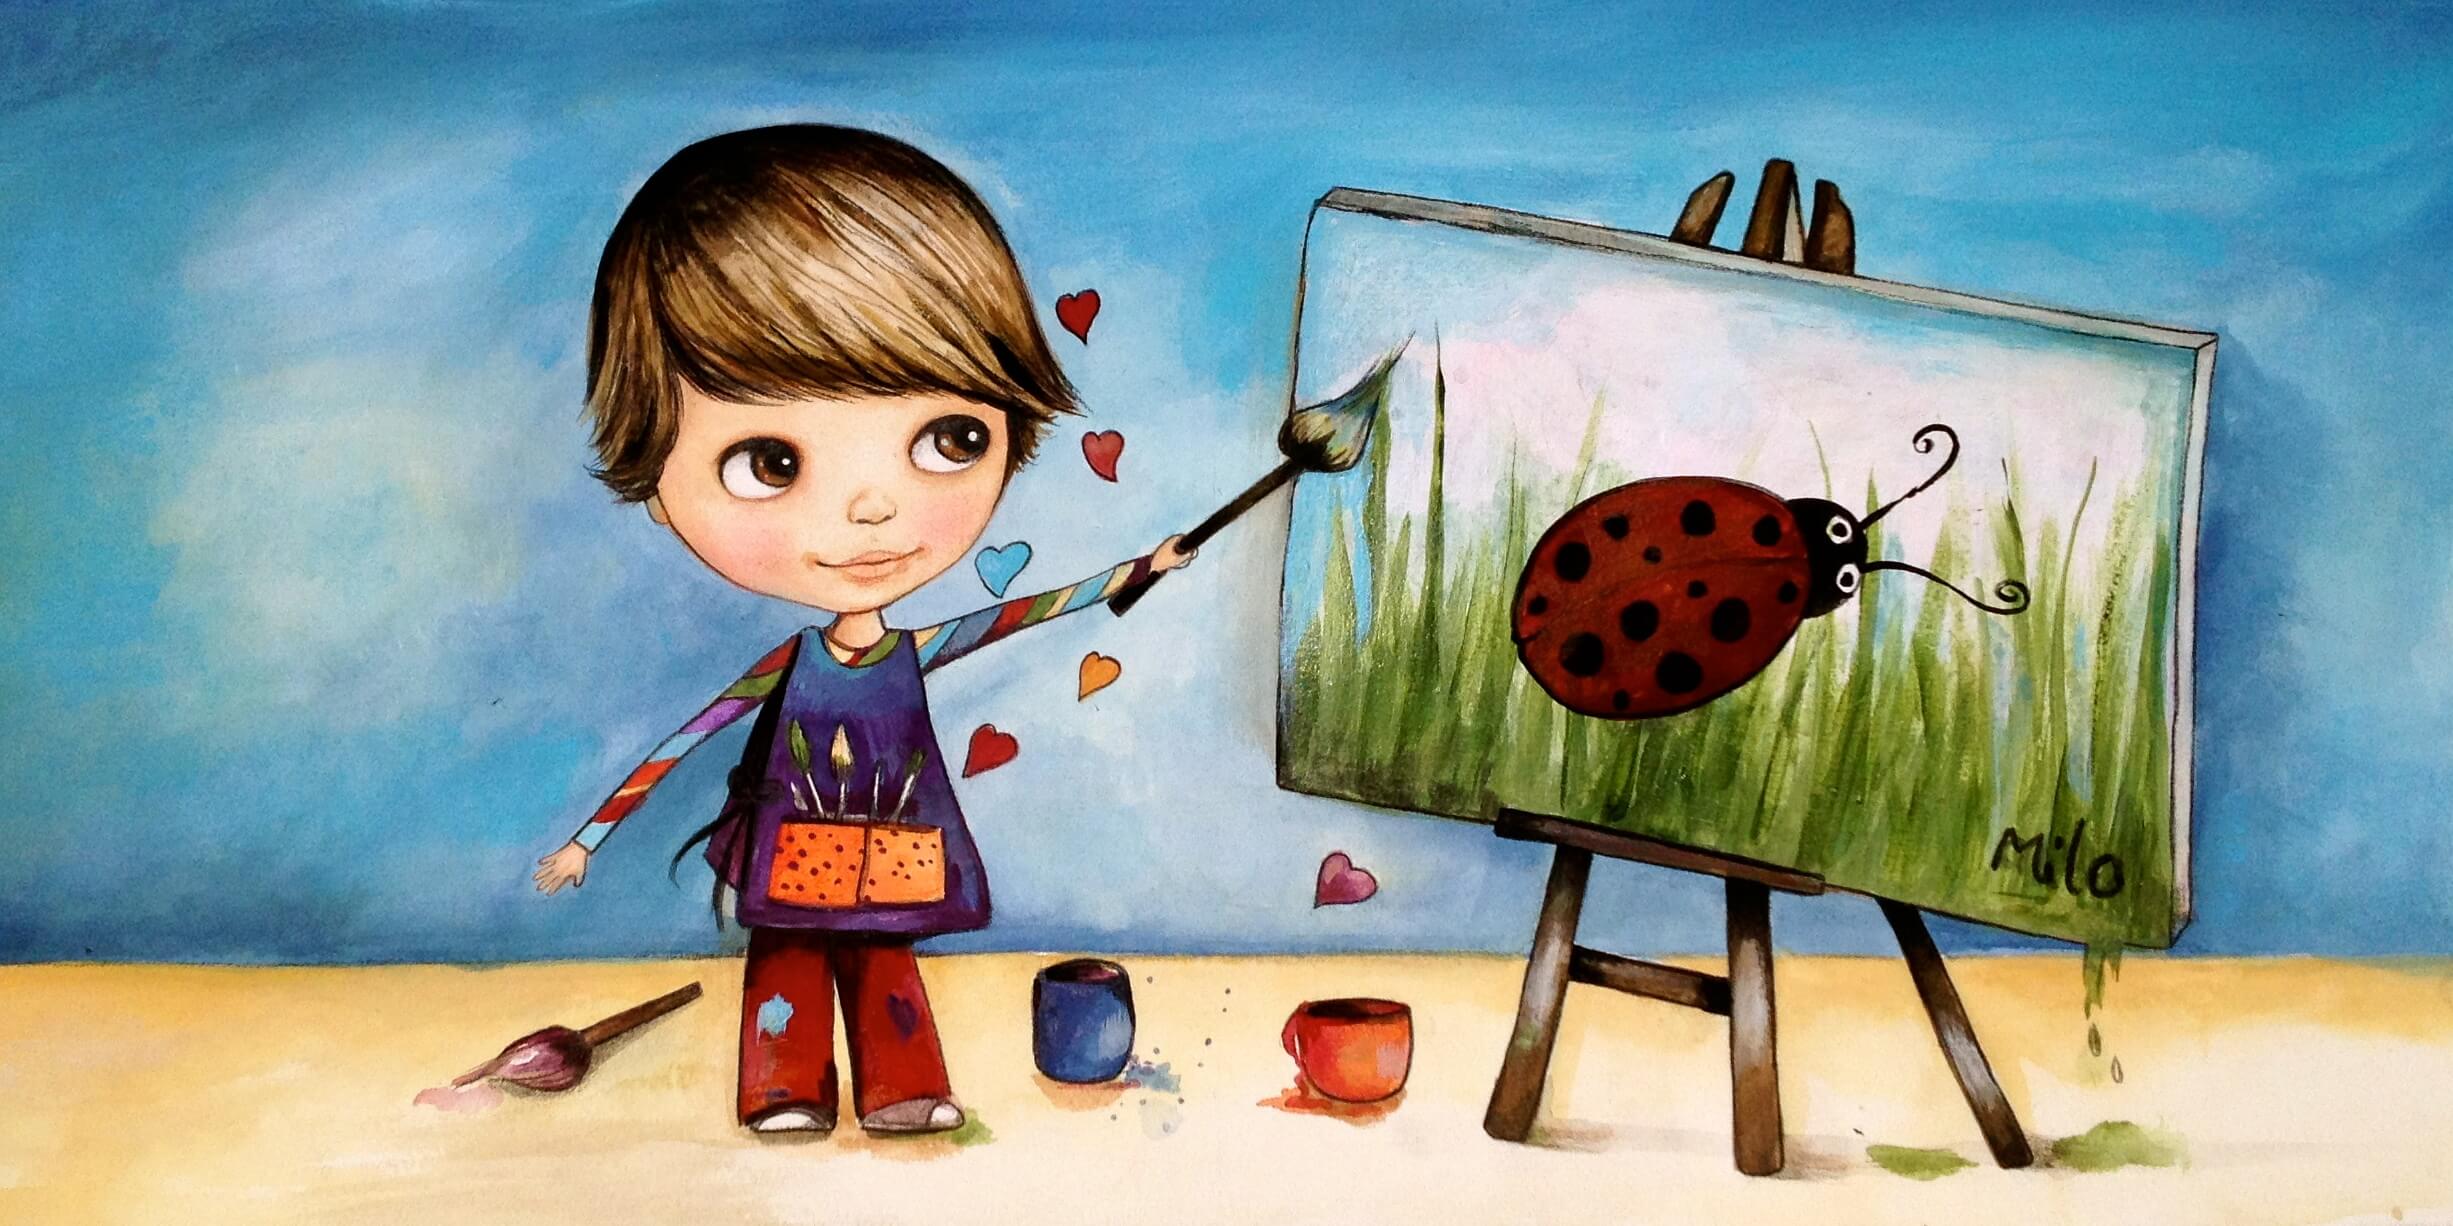 Child Painting Ladybug